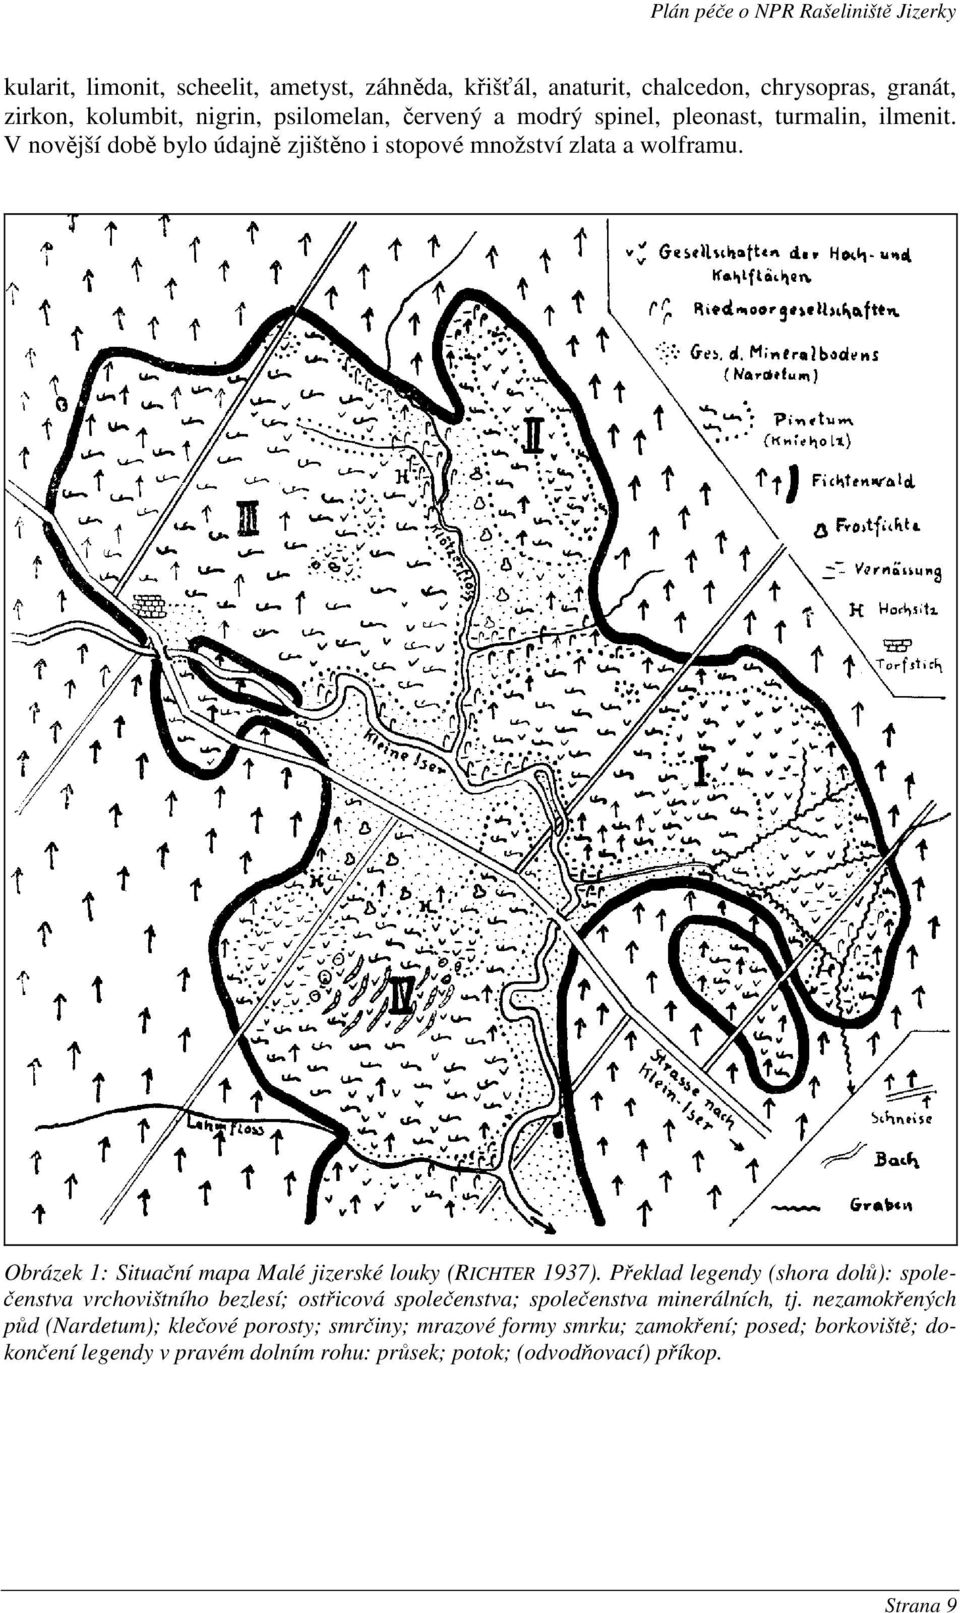 Obrázek 1: Situační mapa Malé jizerské louky (RICHTER 1937).